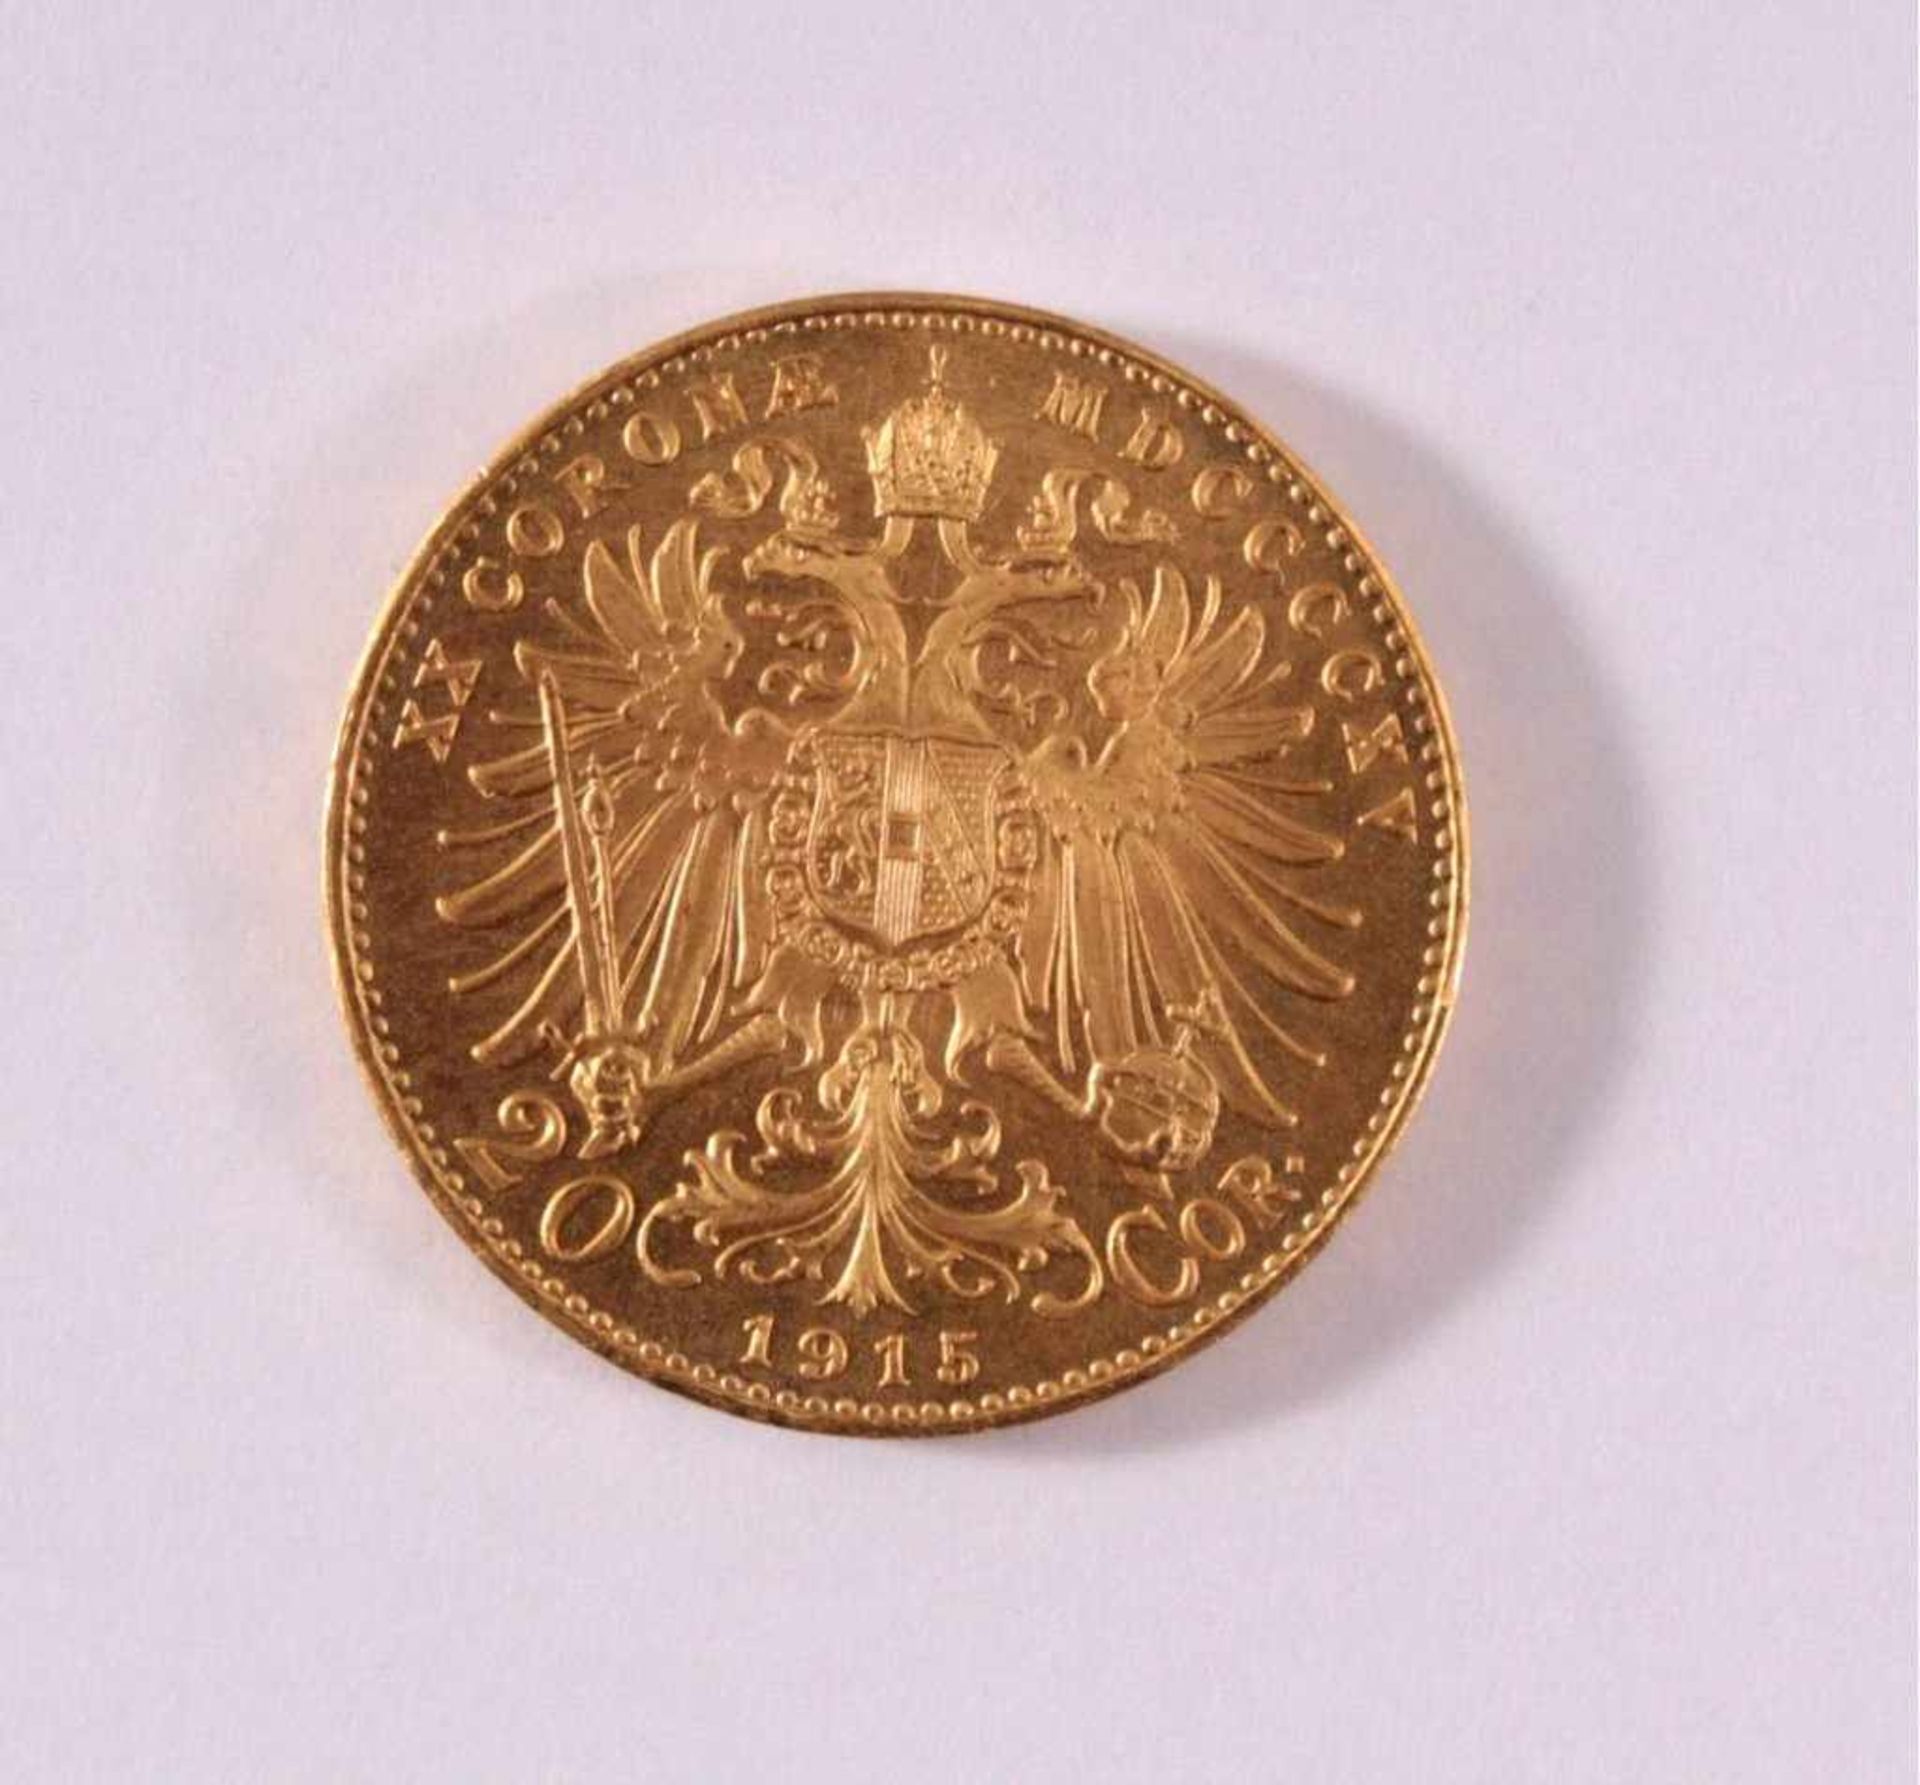 Österreich 20 Corona 1915Ca. 6,7 g, Durchmesser 2,1 cm in vz. - Bild 2 aus 2